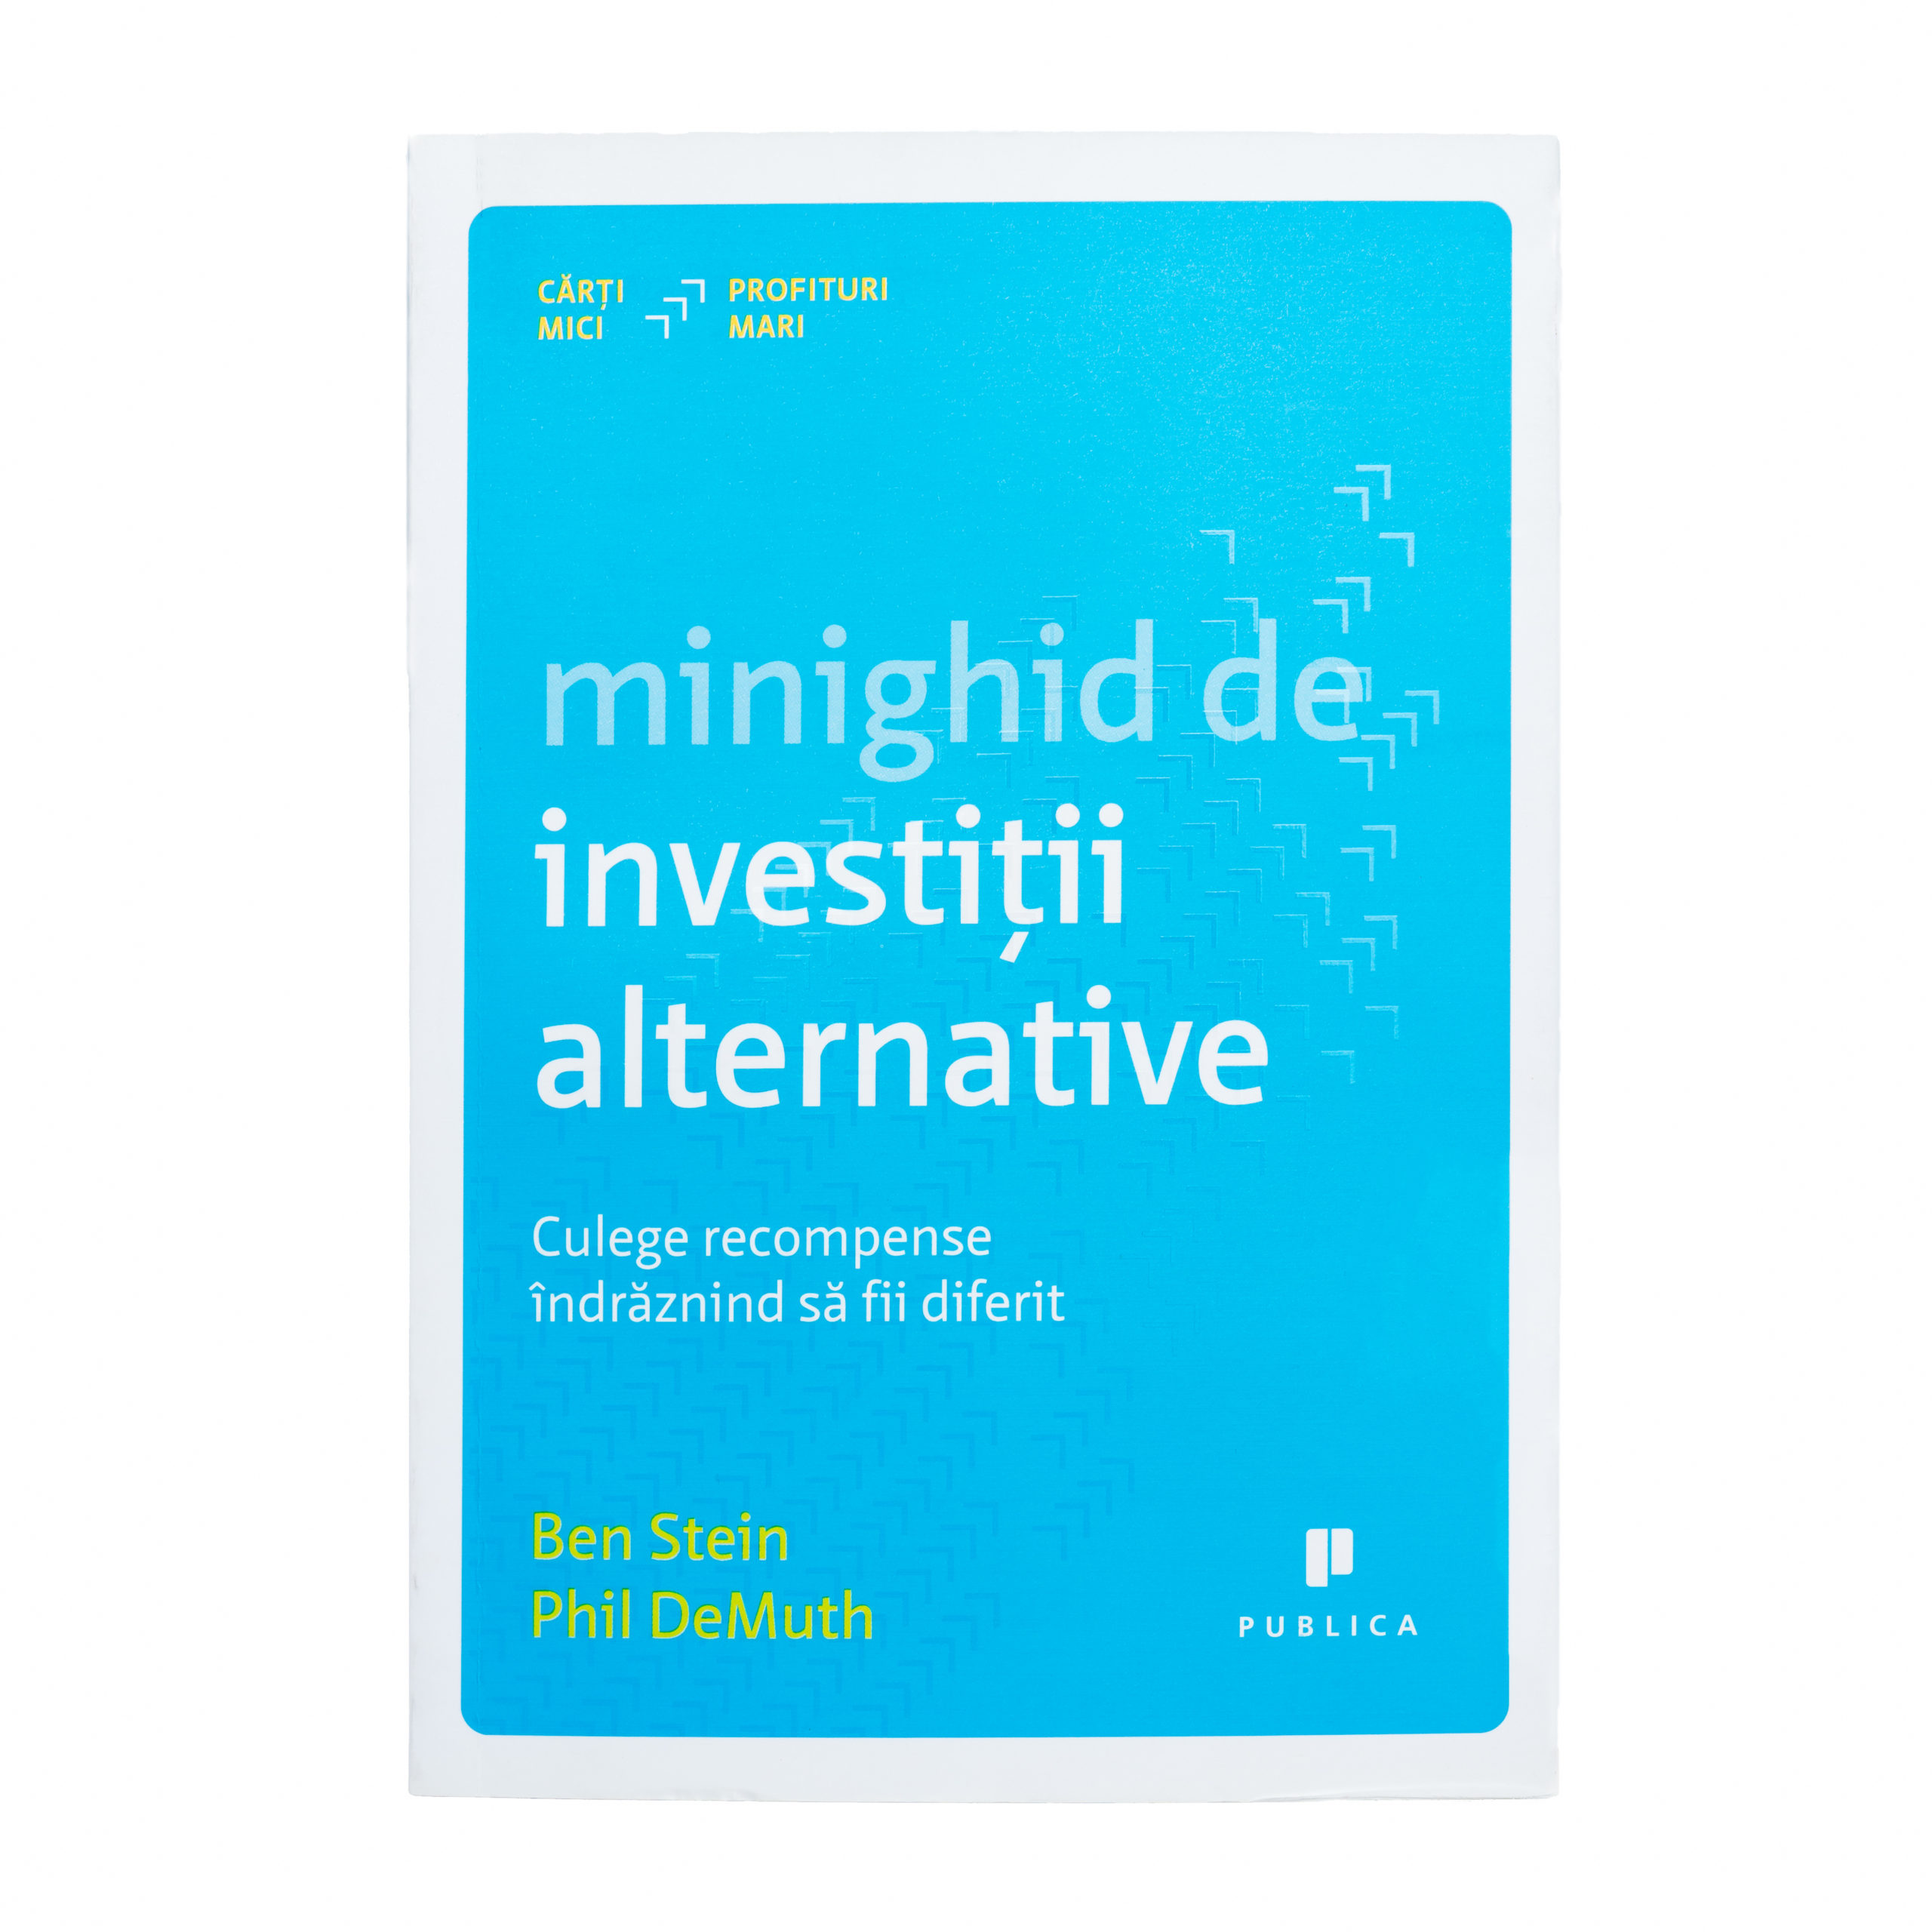 Minighid de Investiții Alternative